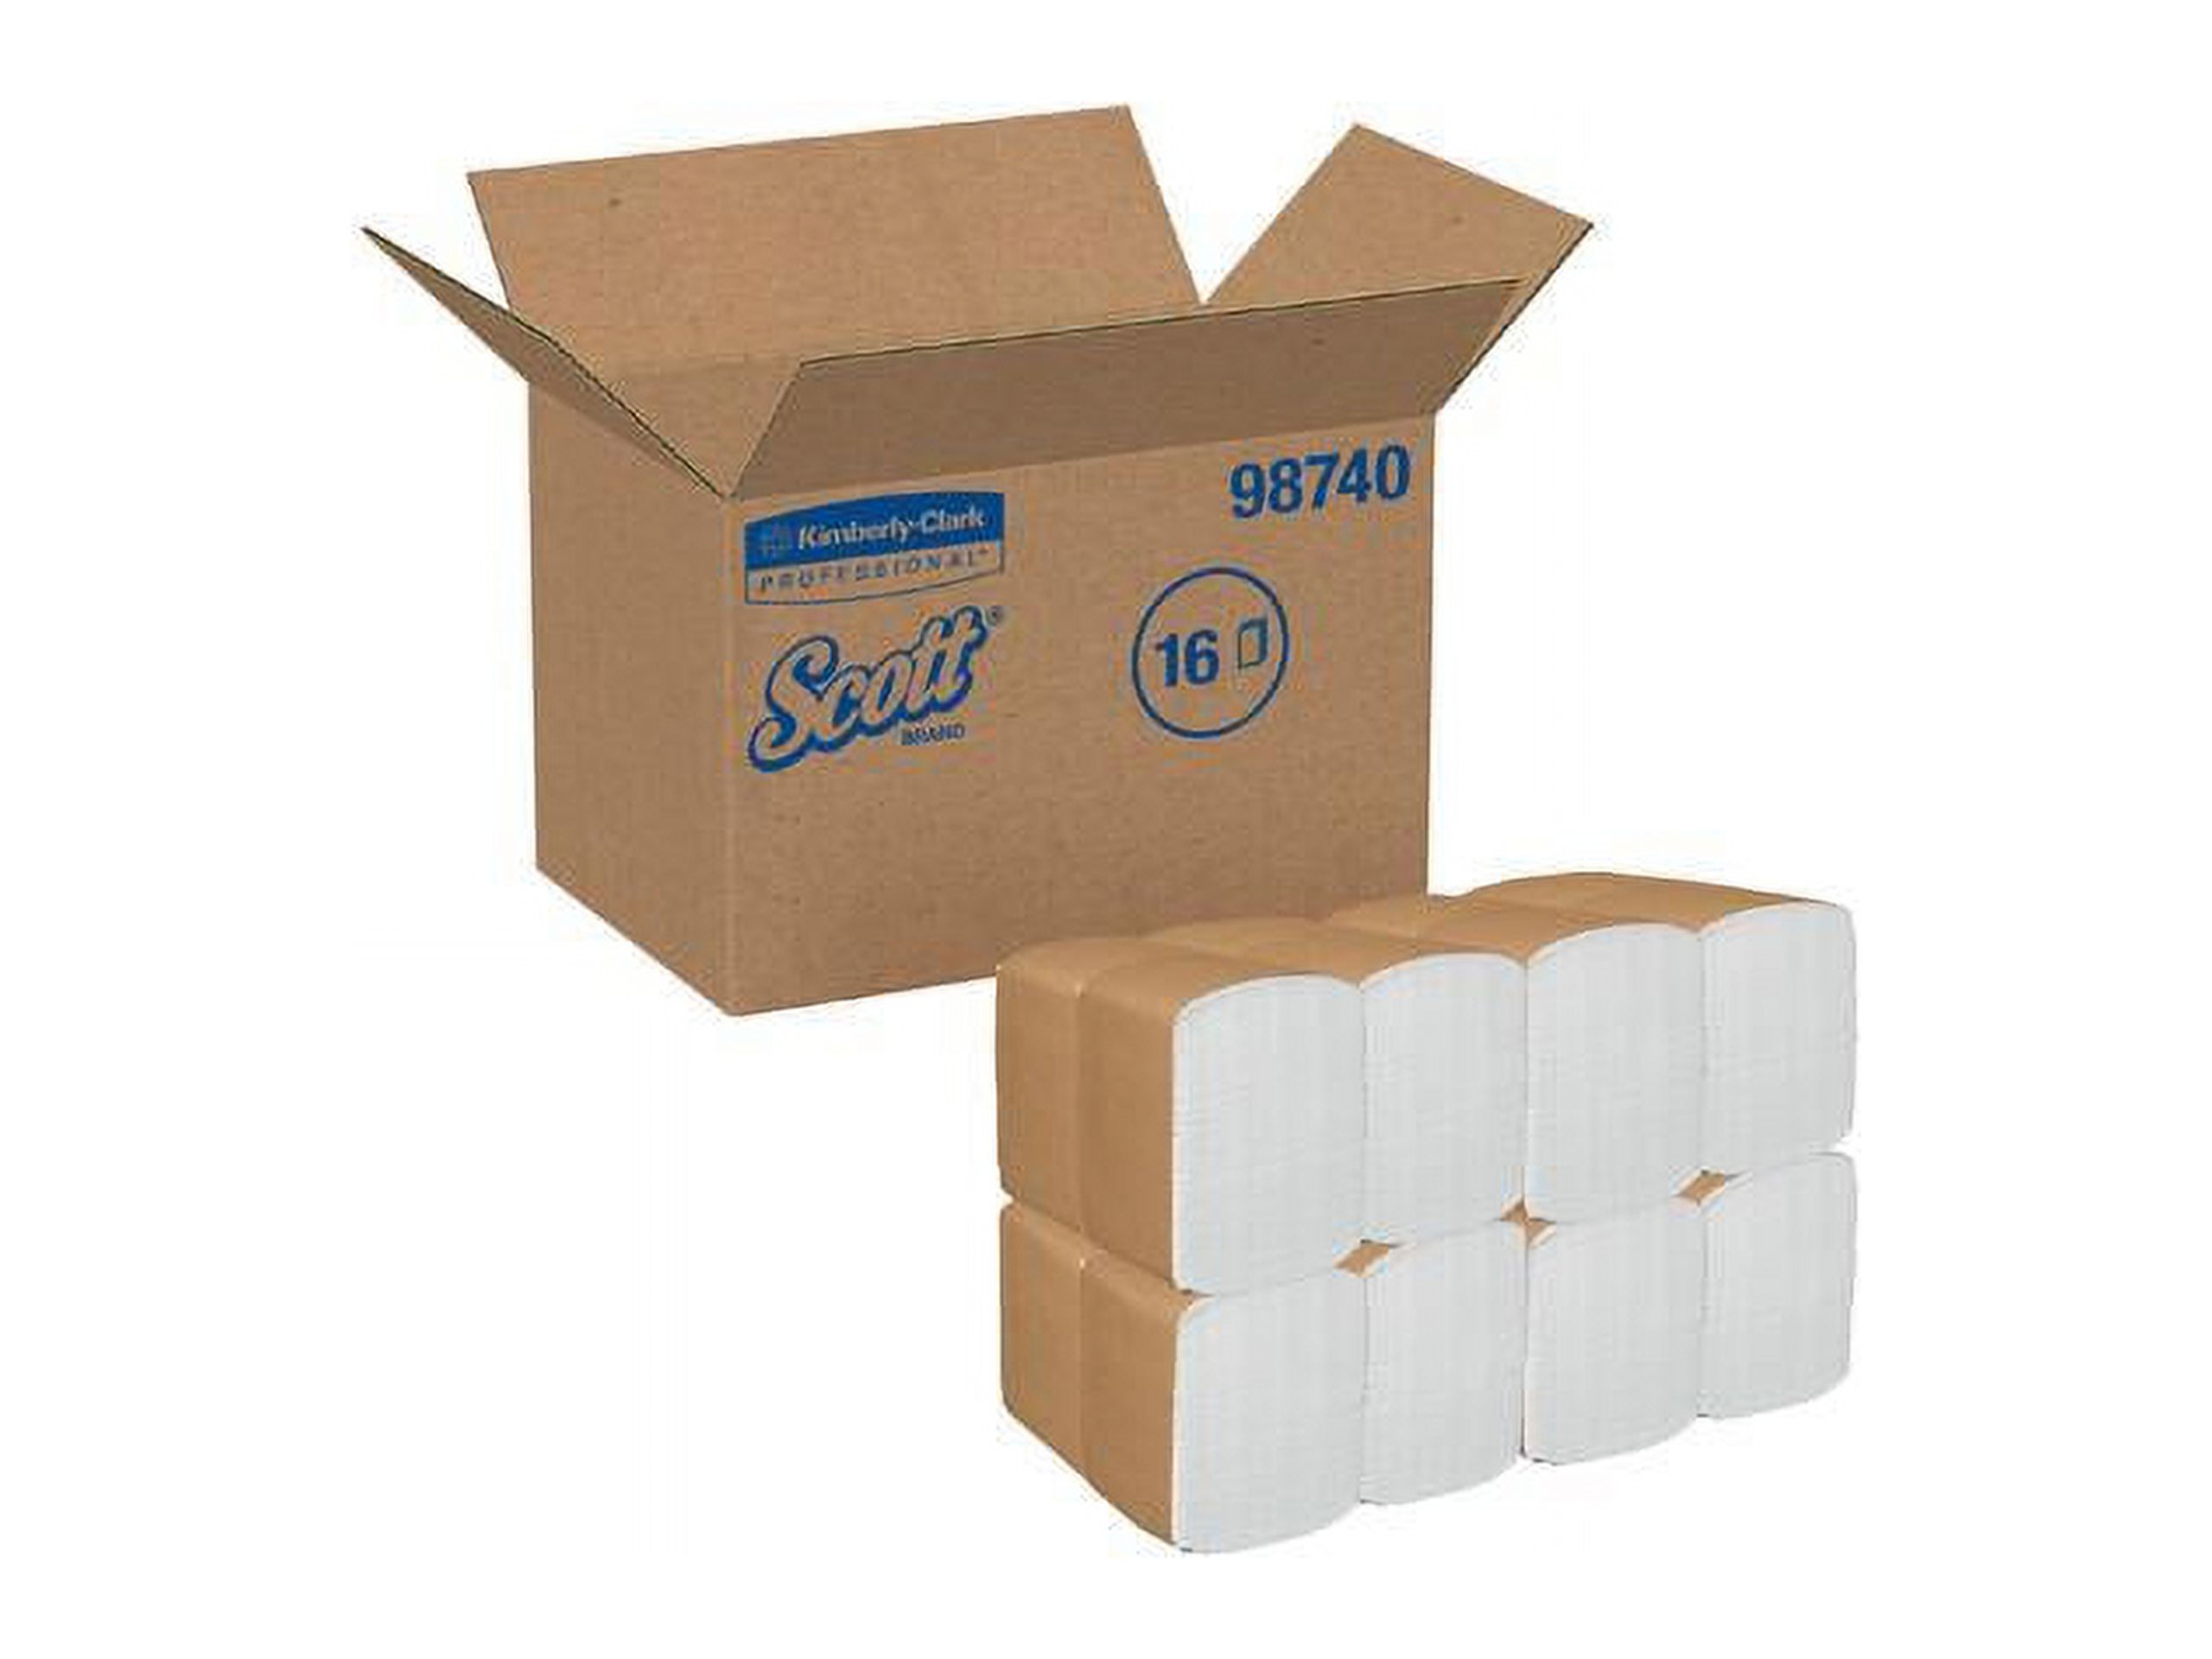 Scott Paper Dinner Napkins (98740), Disposable, White, 1per8 Fold, 1-Ply, 12 x 13 (Unfolded), 12 Packs of 500 Dinner Napkins (6,000 per Case) - image 4 of 4